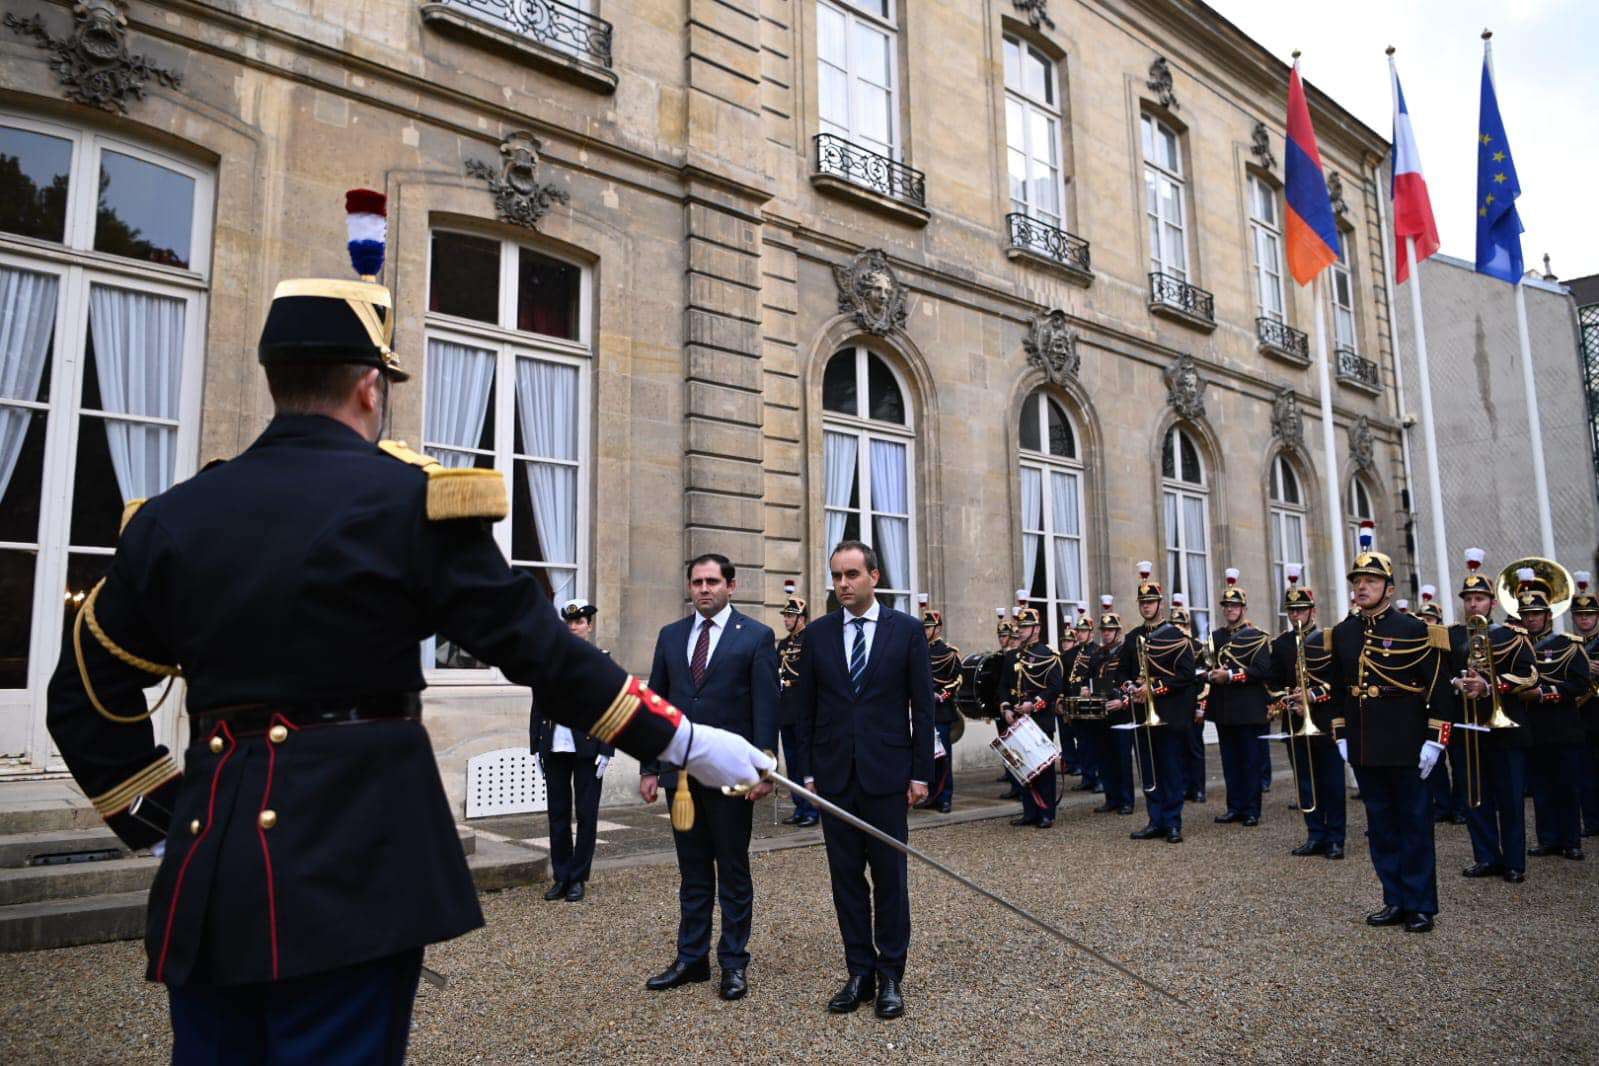 Ֆրանսիան պատրաստ է սահմանային իրավիճակը գնահատելու համար Հայաստան պատվիրակություն ուղարկել